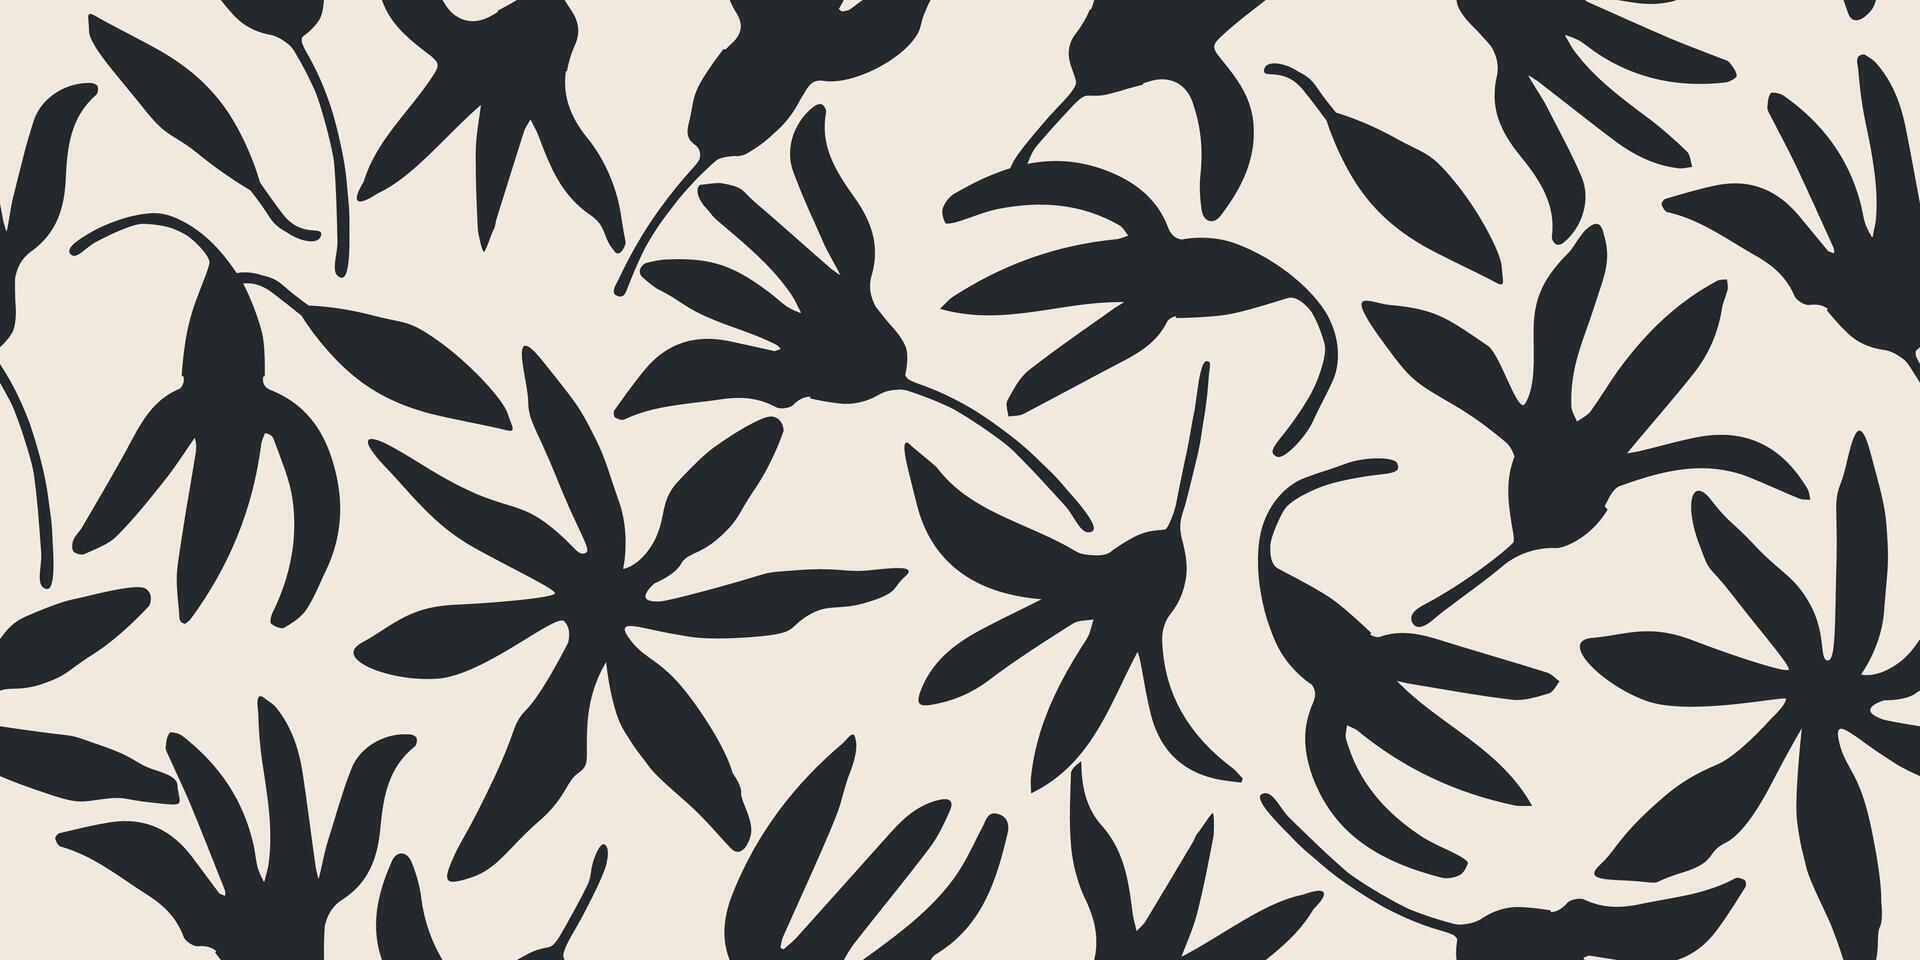 blomma sömlös mönster . organisk former abstrakt blommig bakgrund. modern skriva ut i svart och vit färger för textil- design, tyg, tapet, täcker, kort, vägg konst, posters och dekoration. vektor